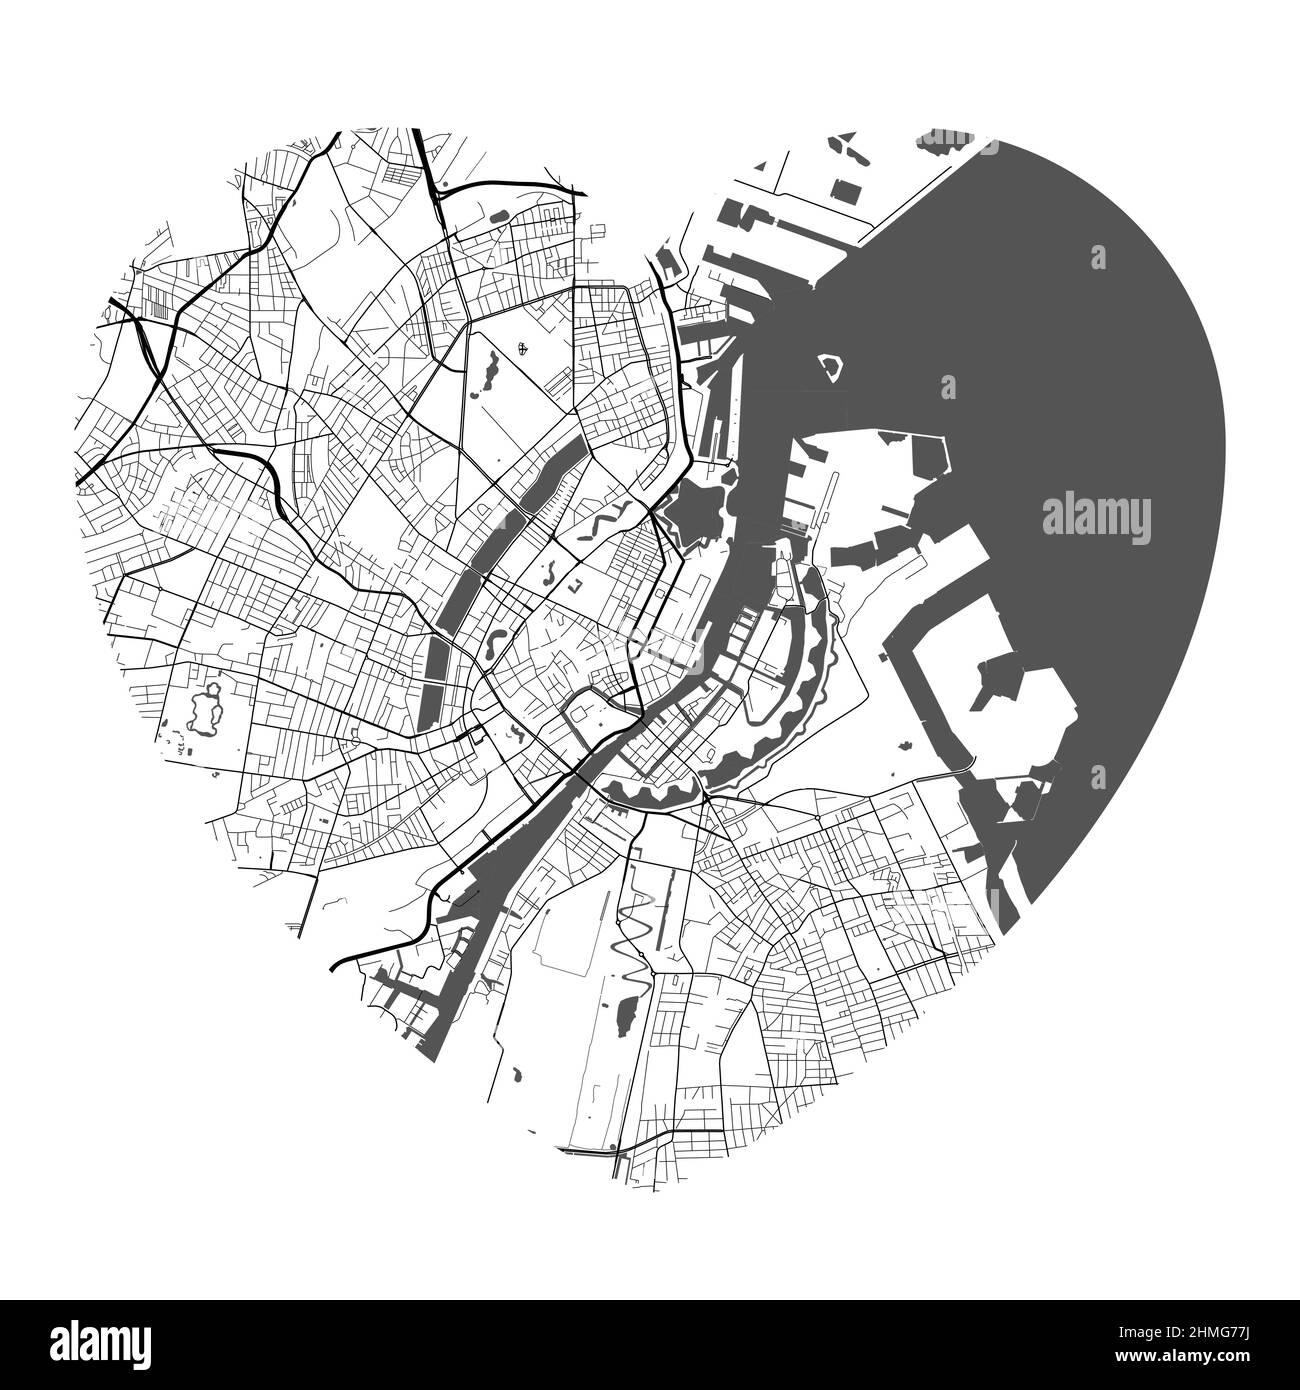 Mappa vettoriale a forma di cuore della città di Copenaghen. Illustrazione dei colori bianco e nero. Strade, strade, fiumi. Illustrazione Vettoriale